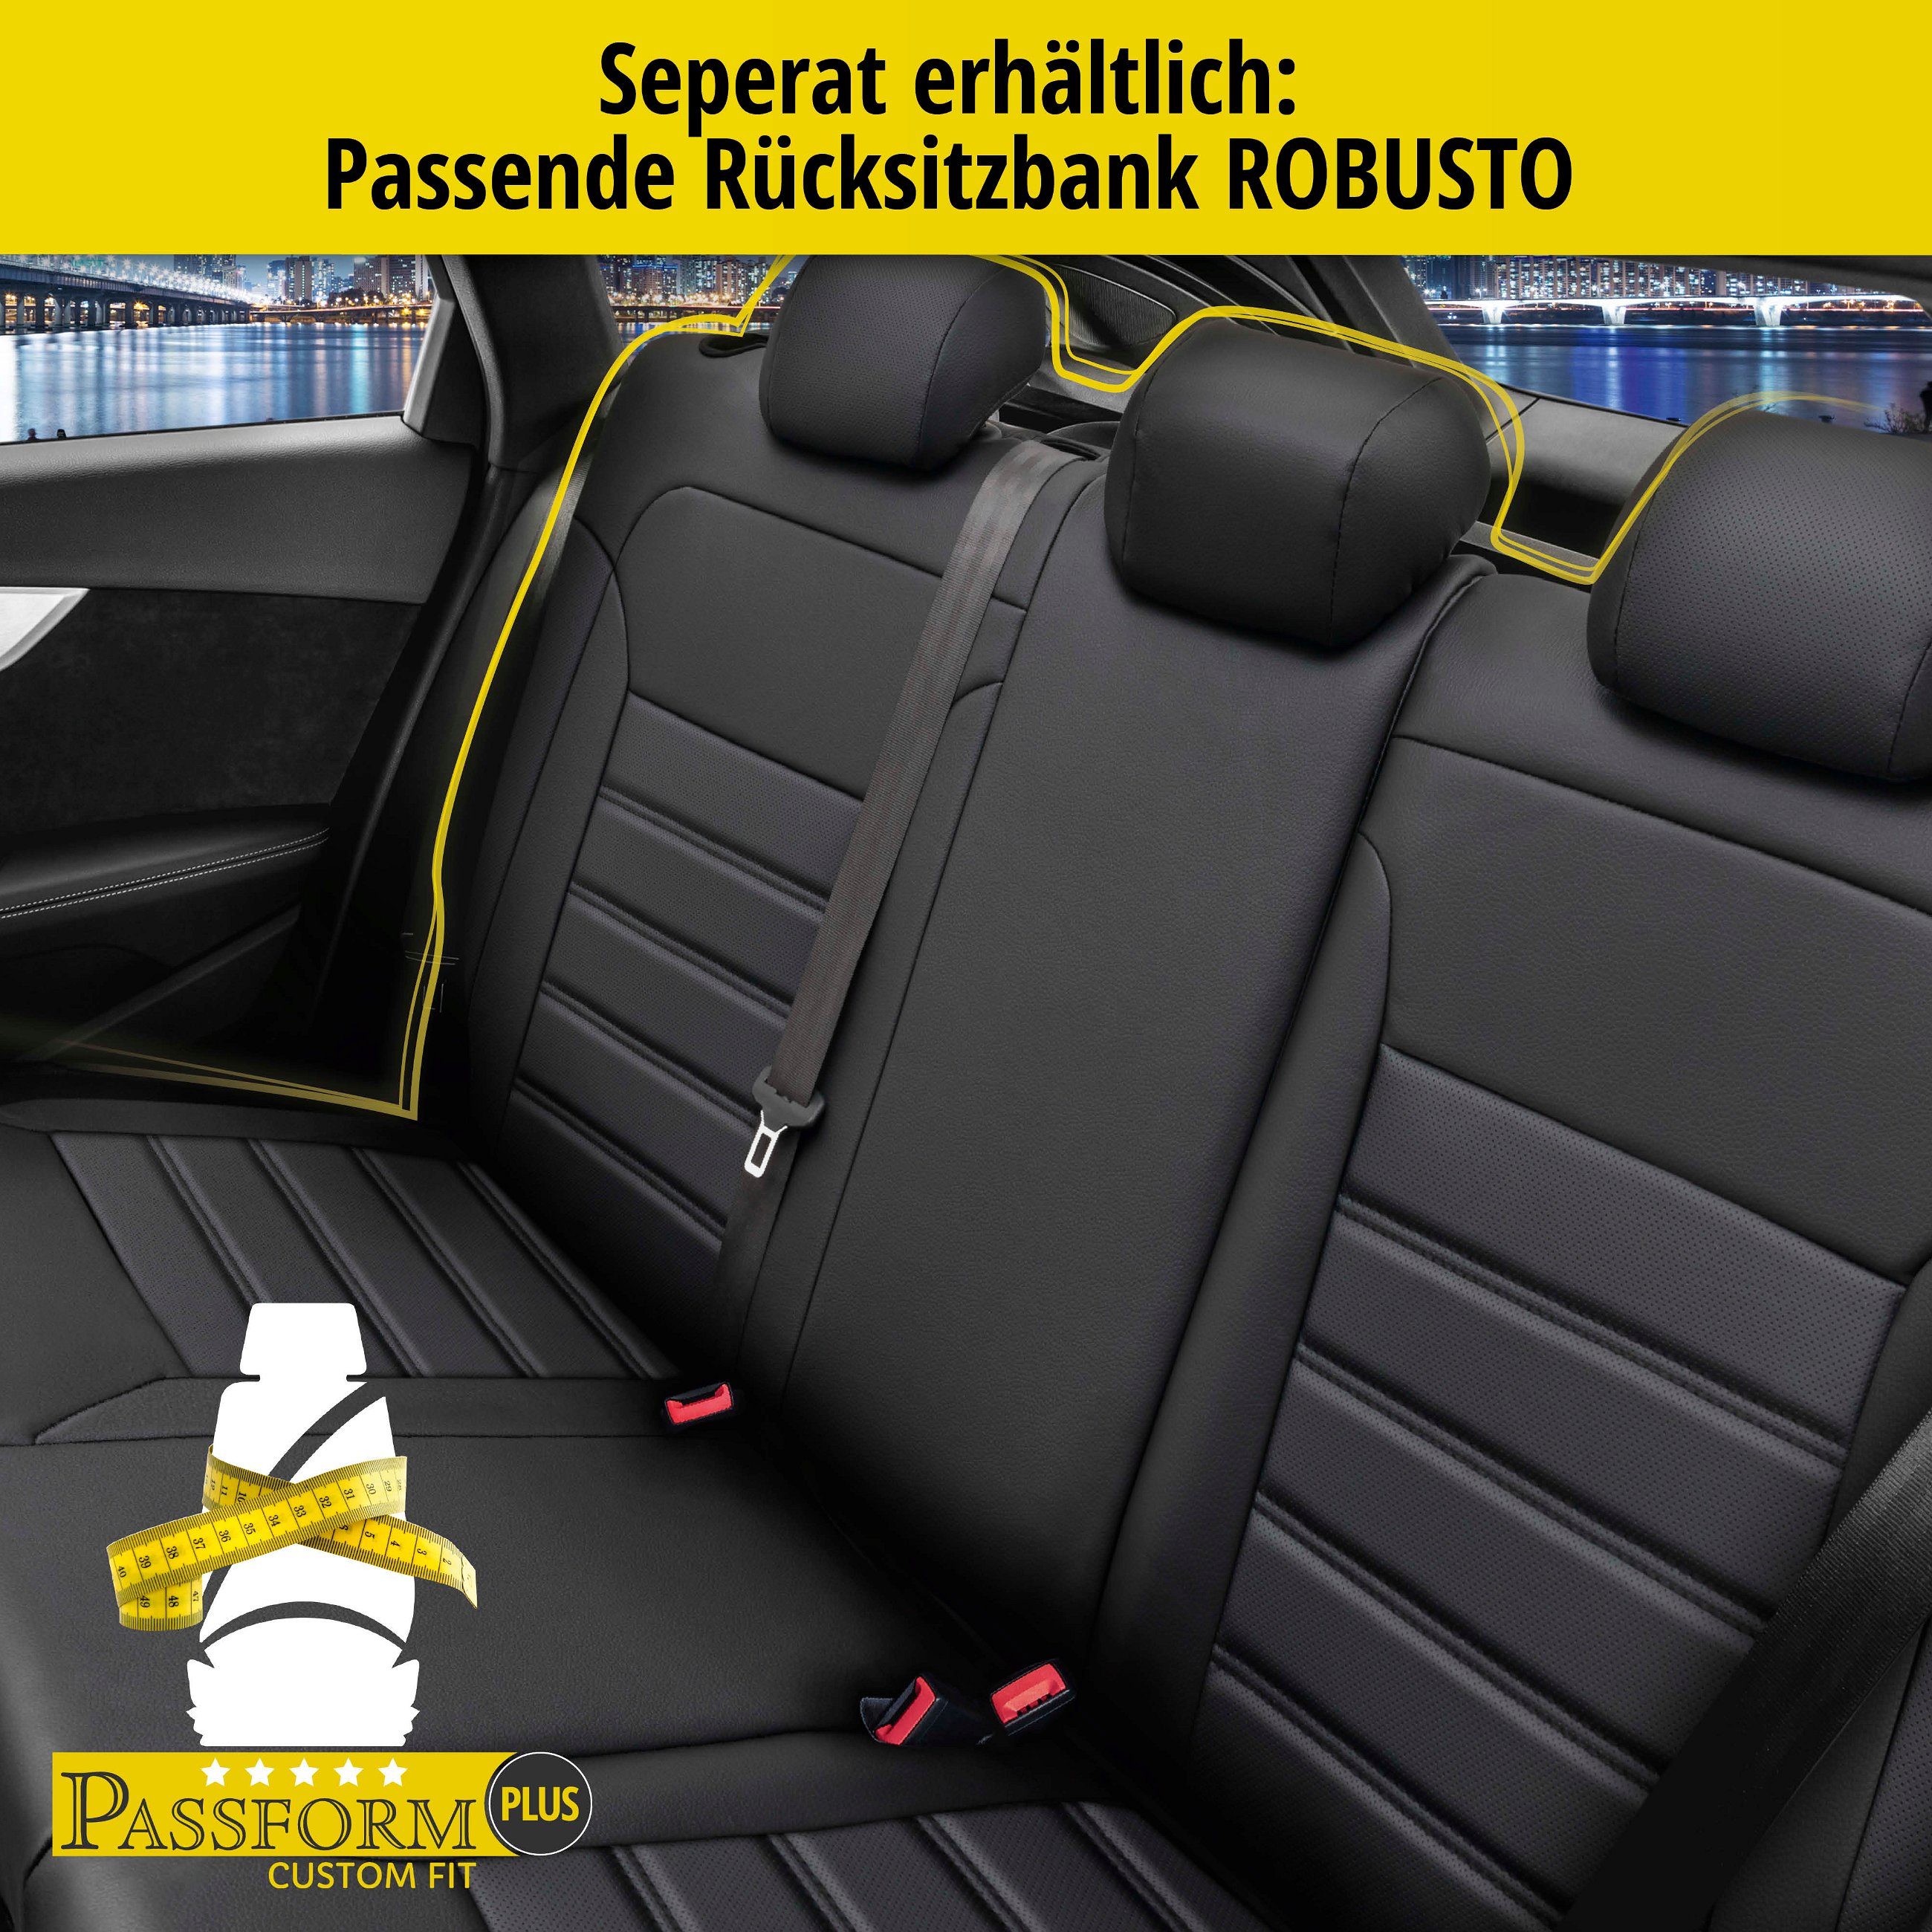 Passform Sitzbezug Robusto für BMW 1 (F20) 07/2011-06/2019, 2 Einzelsitzbezüge für Normalsitze